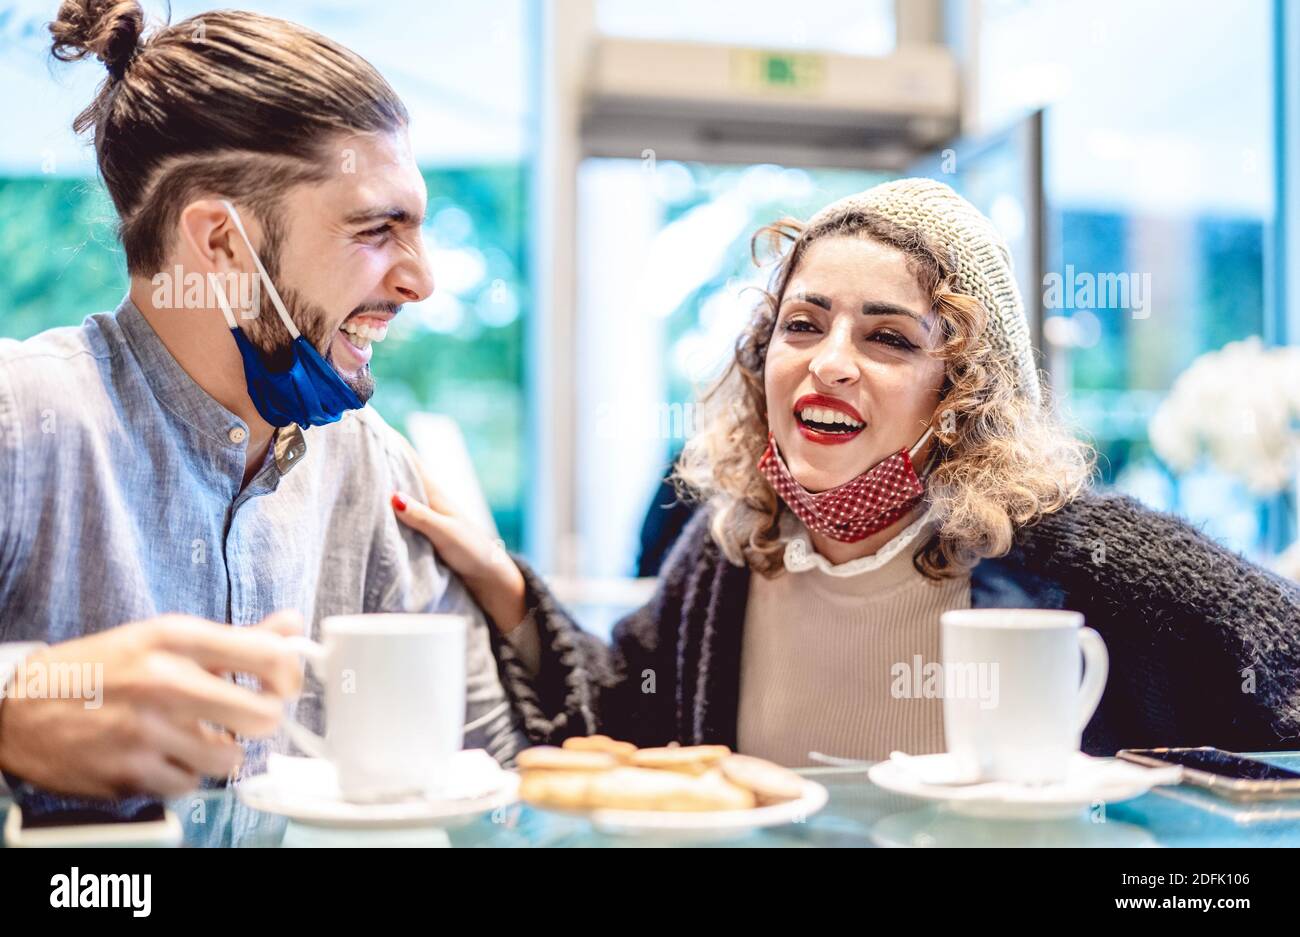 Glückliches Paar trägt Gesichtsmaske Spaß zusammen an der Bar Cafeteria - Neue normale Lifestyle-Konzept mit jungen Menschen auf Positive Stimmung Stockfoto